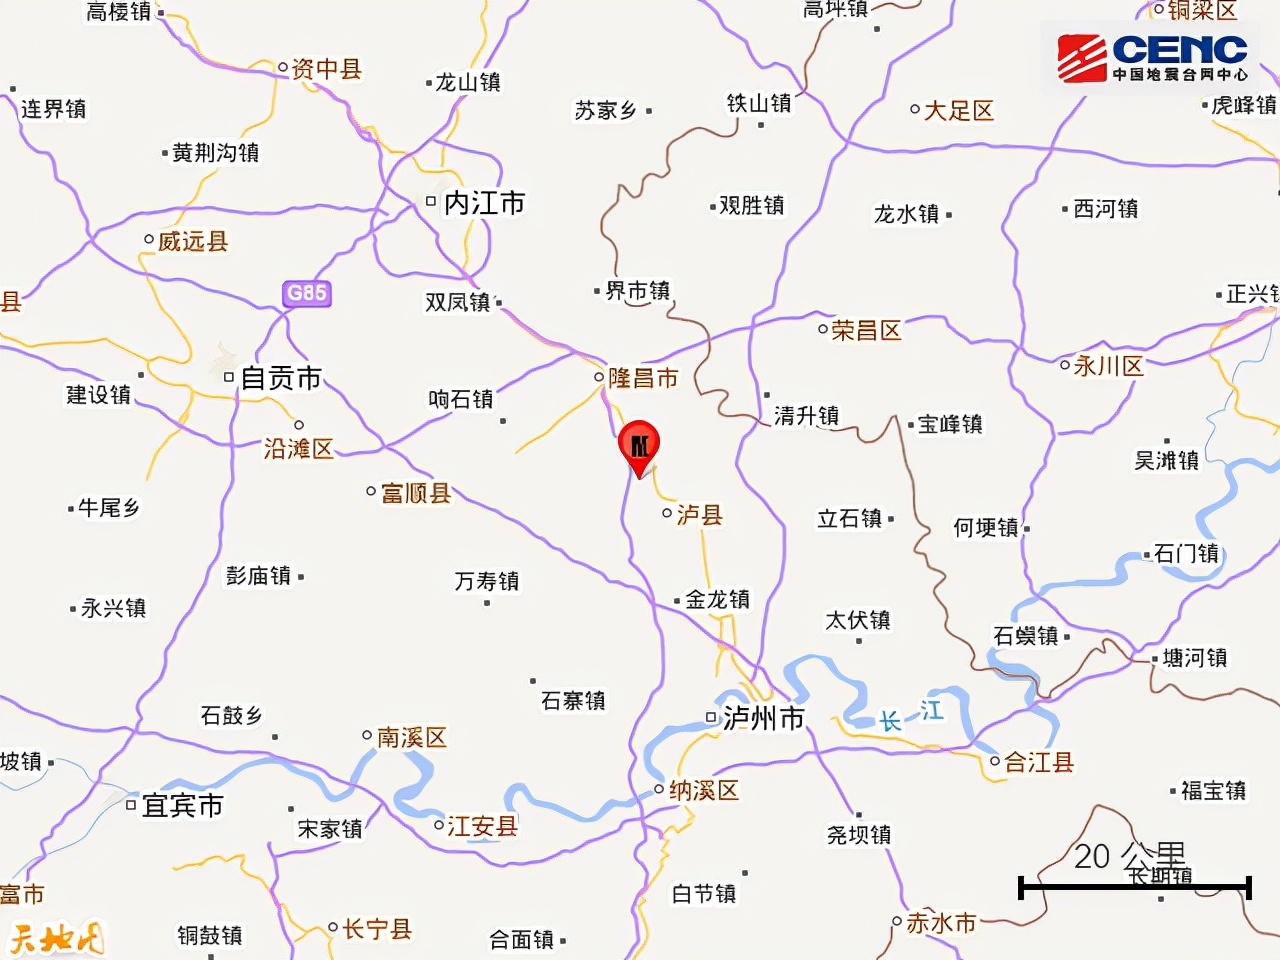 是页岩气开采“惹的祸”？聚焦泸县6.0级地震，专家：无直接证据